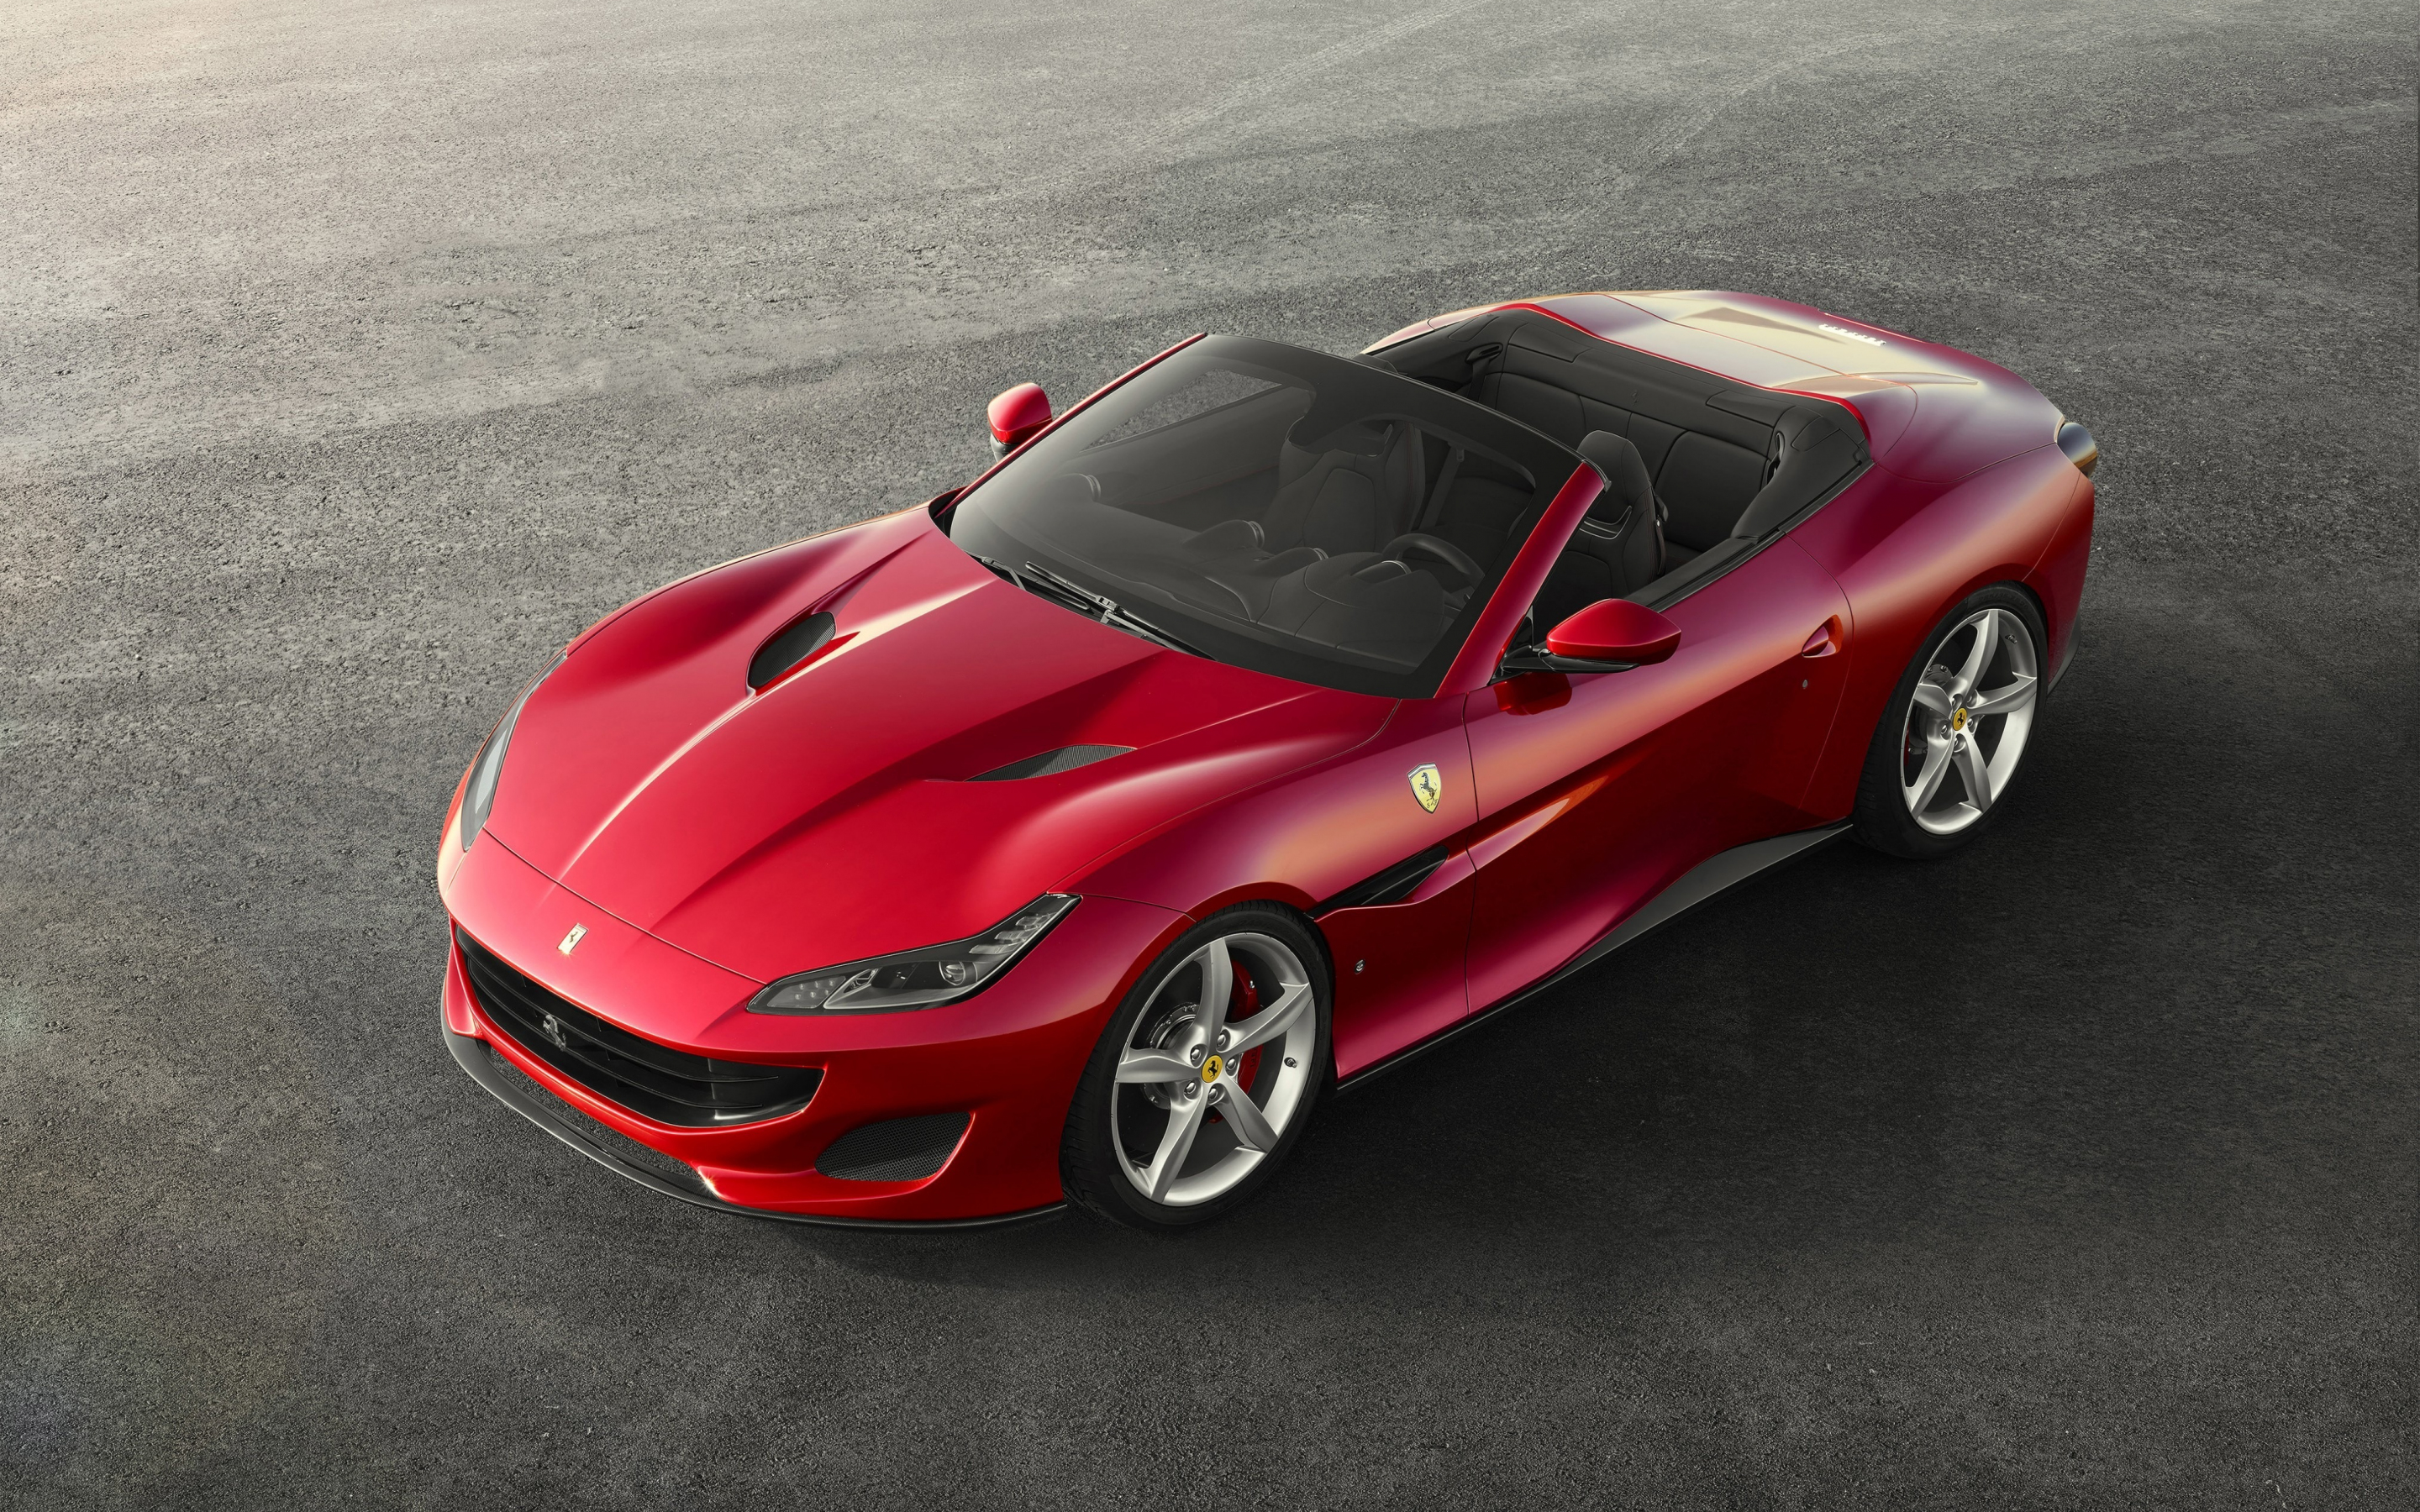 Ferrari portofino, red luxury car, 2018, 2880x1800 wallpaper